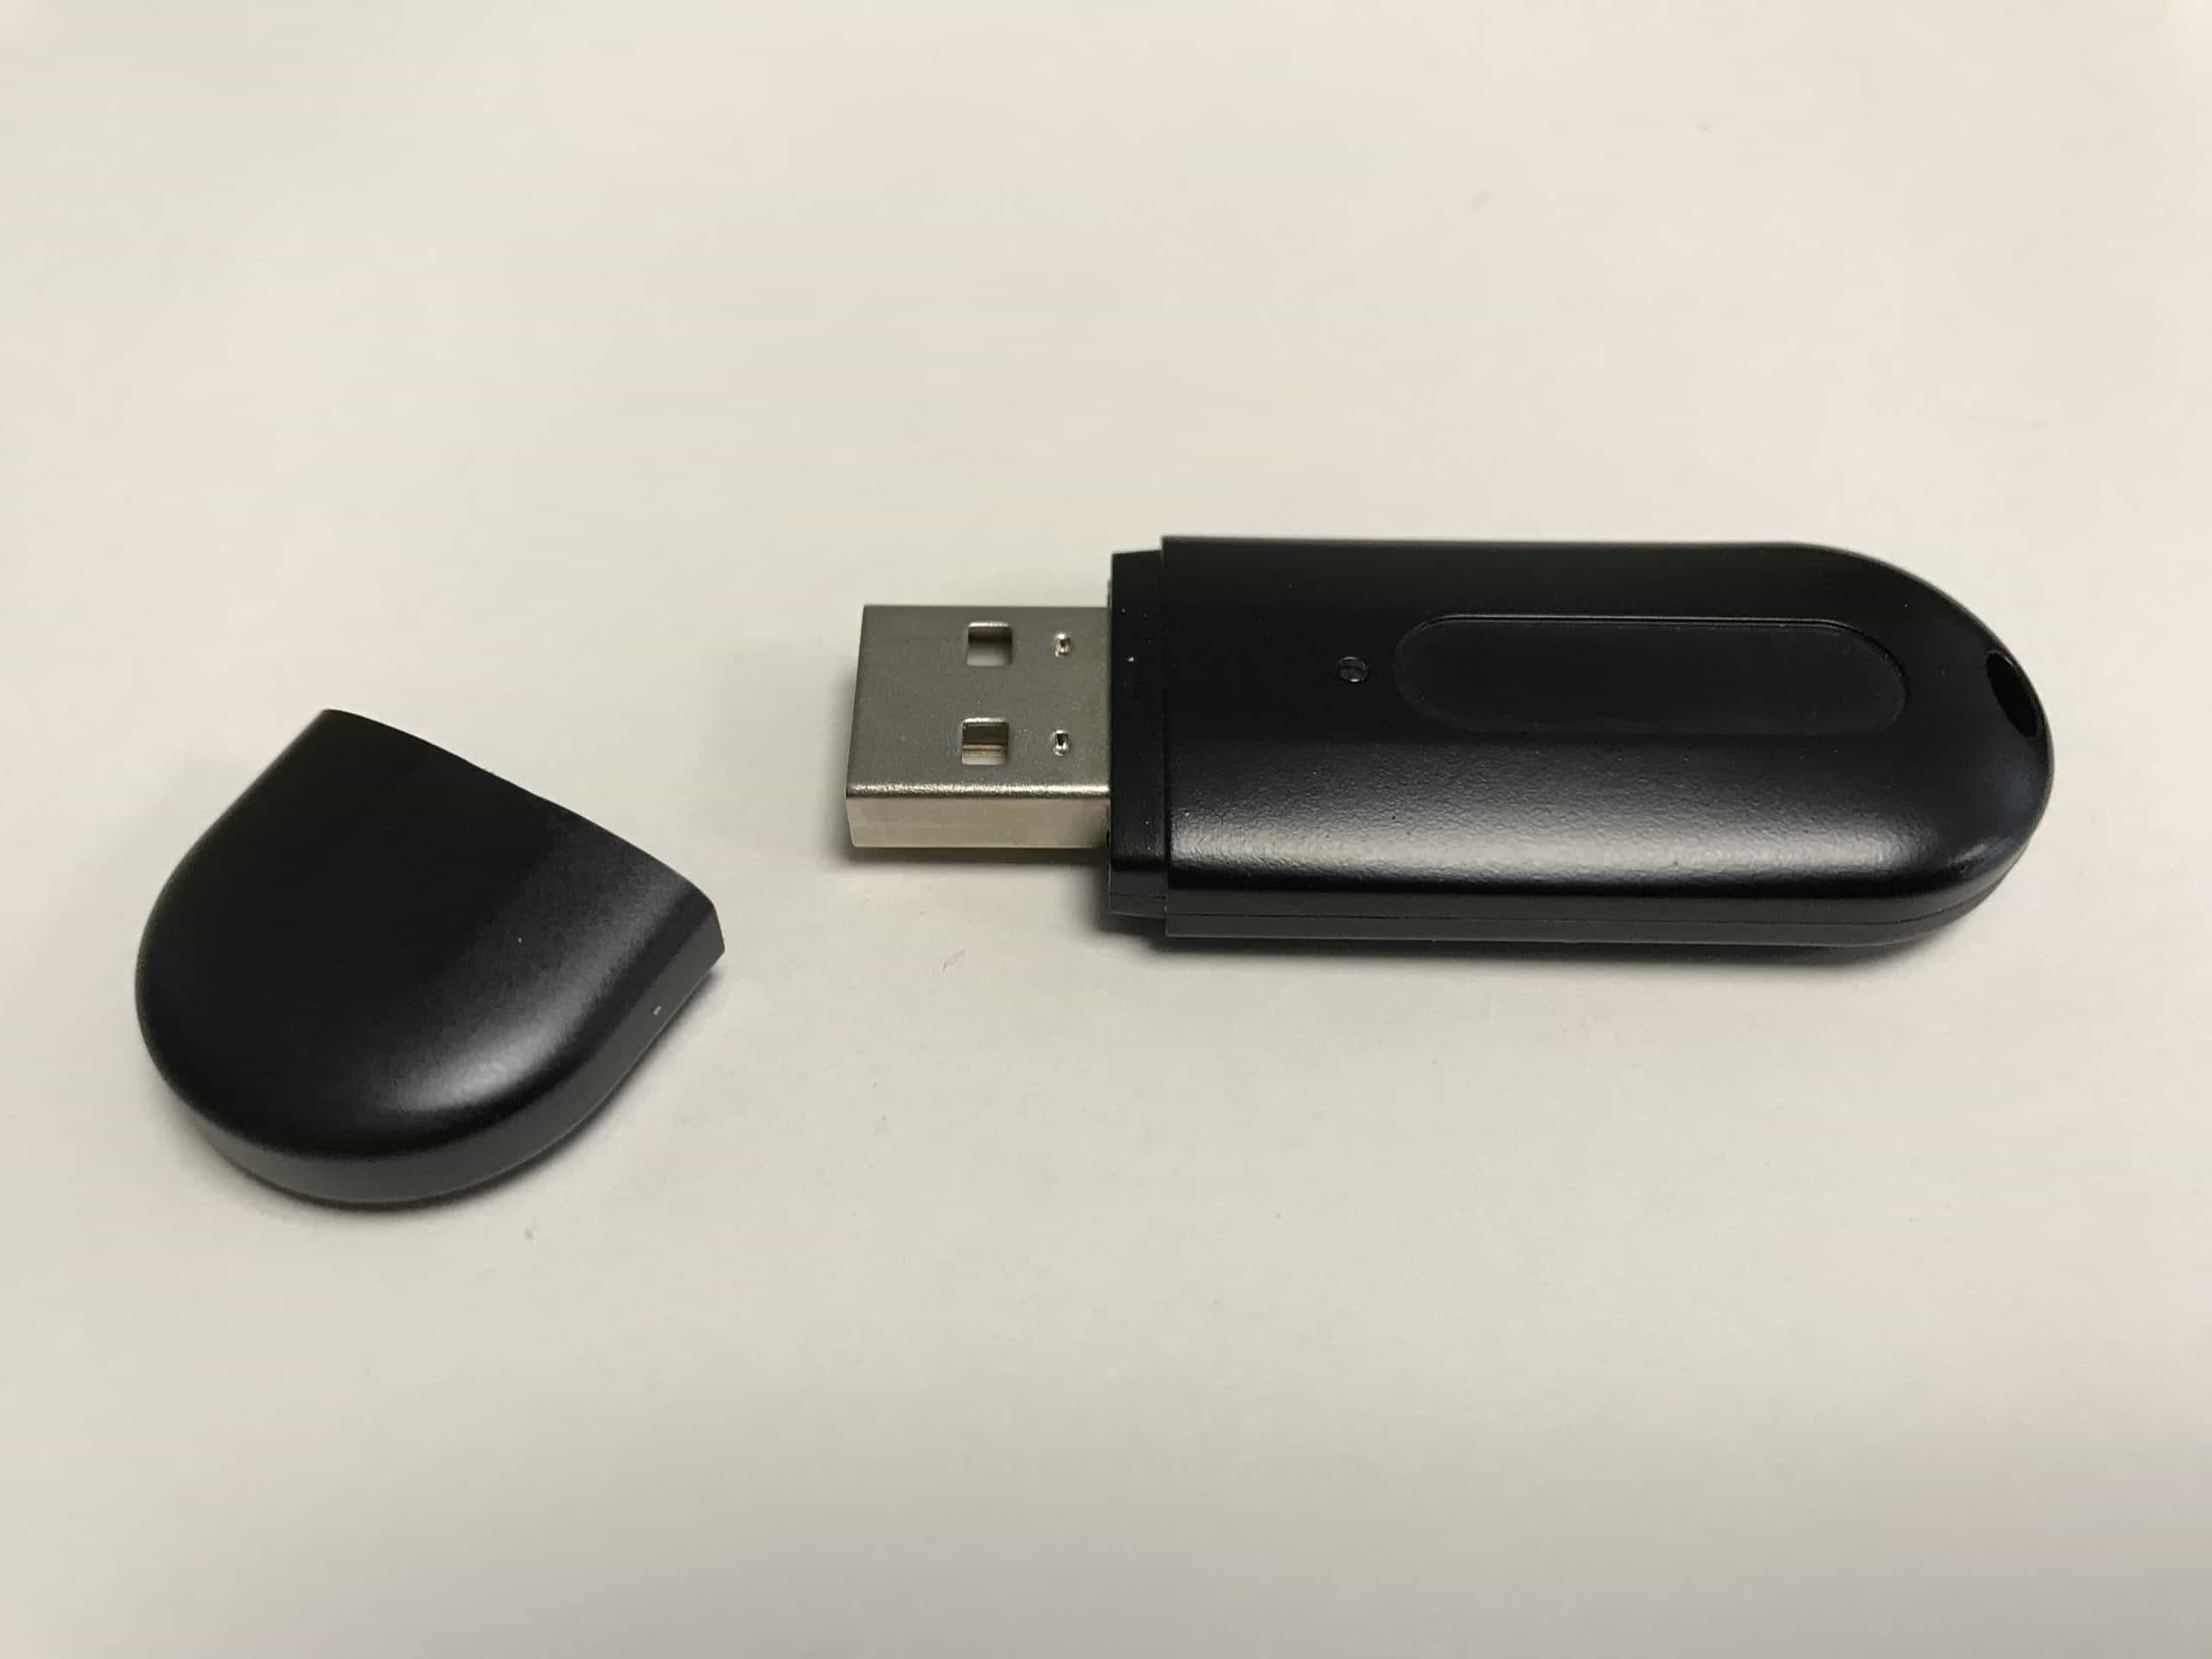 USB Token là gì vậy?